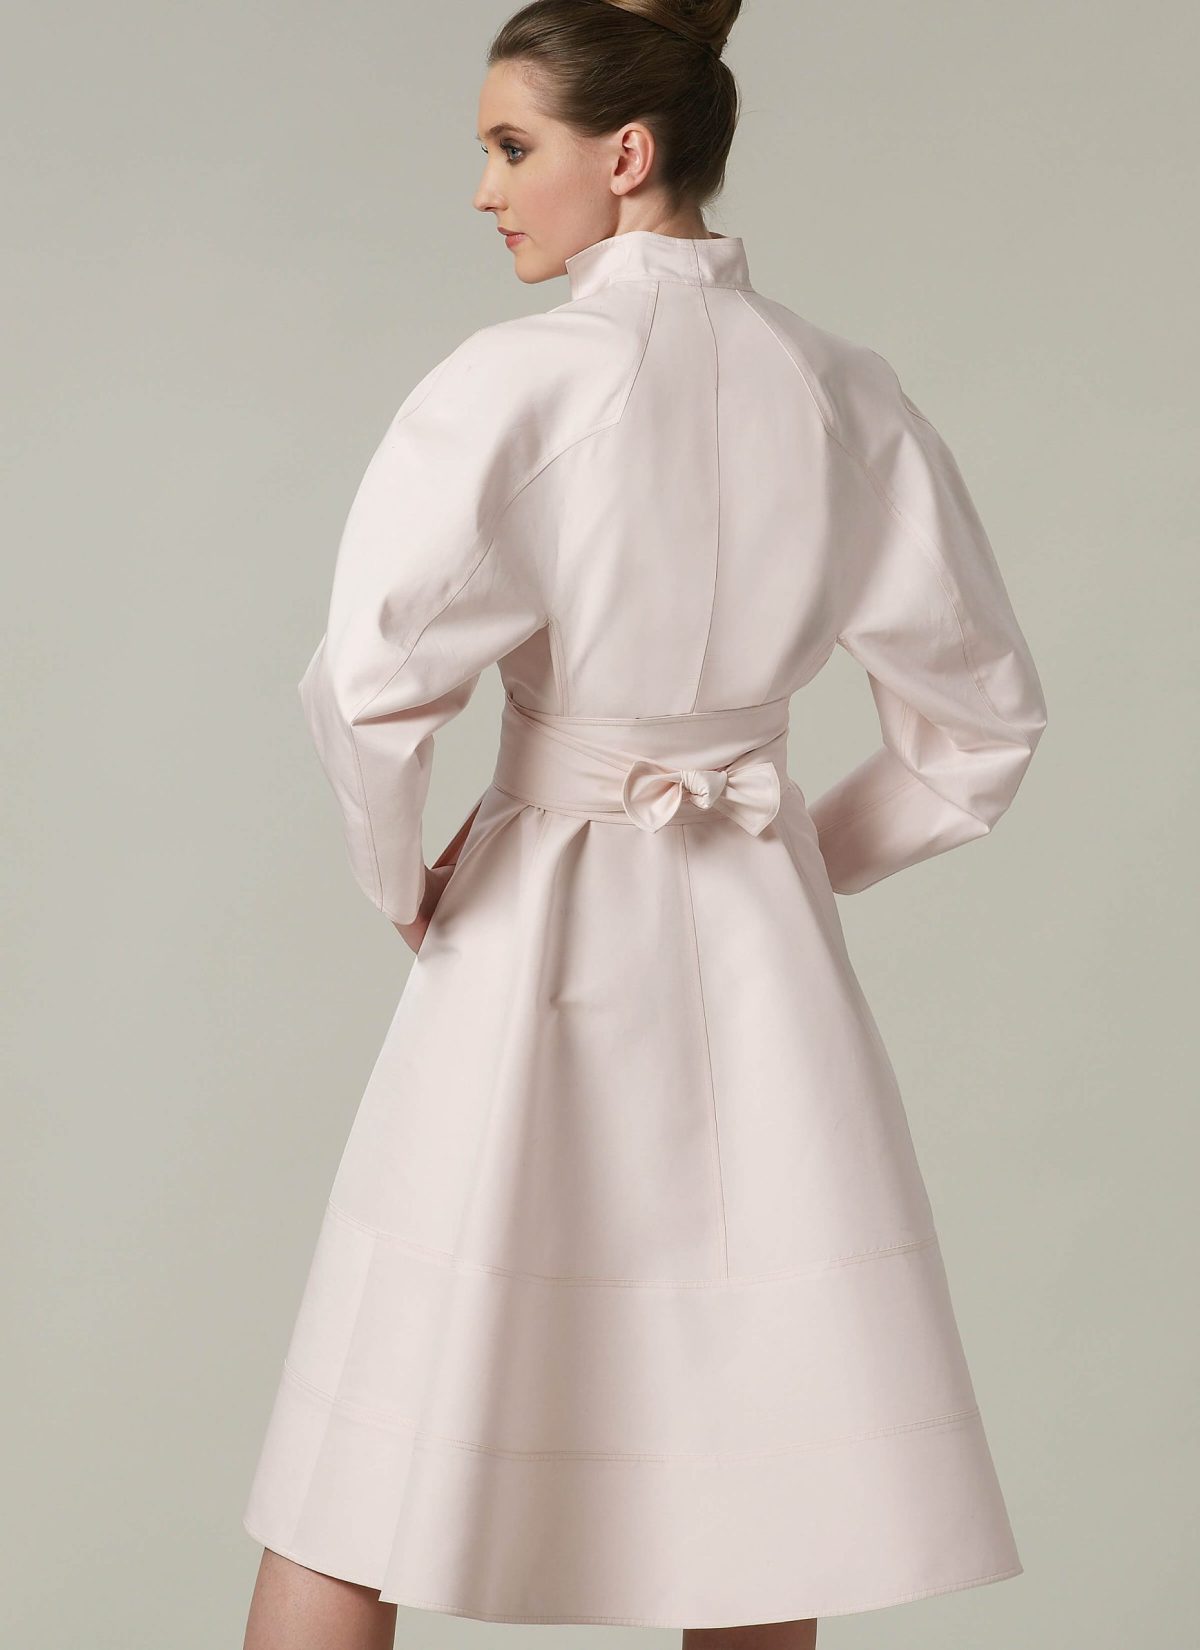 Vogue Patterns V1239 Misses' Dress and Belt